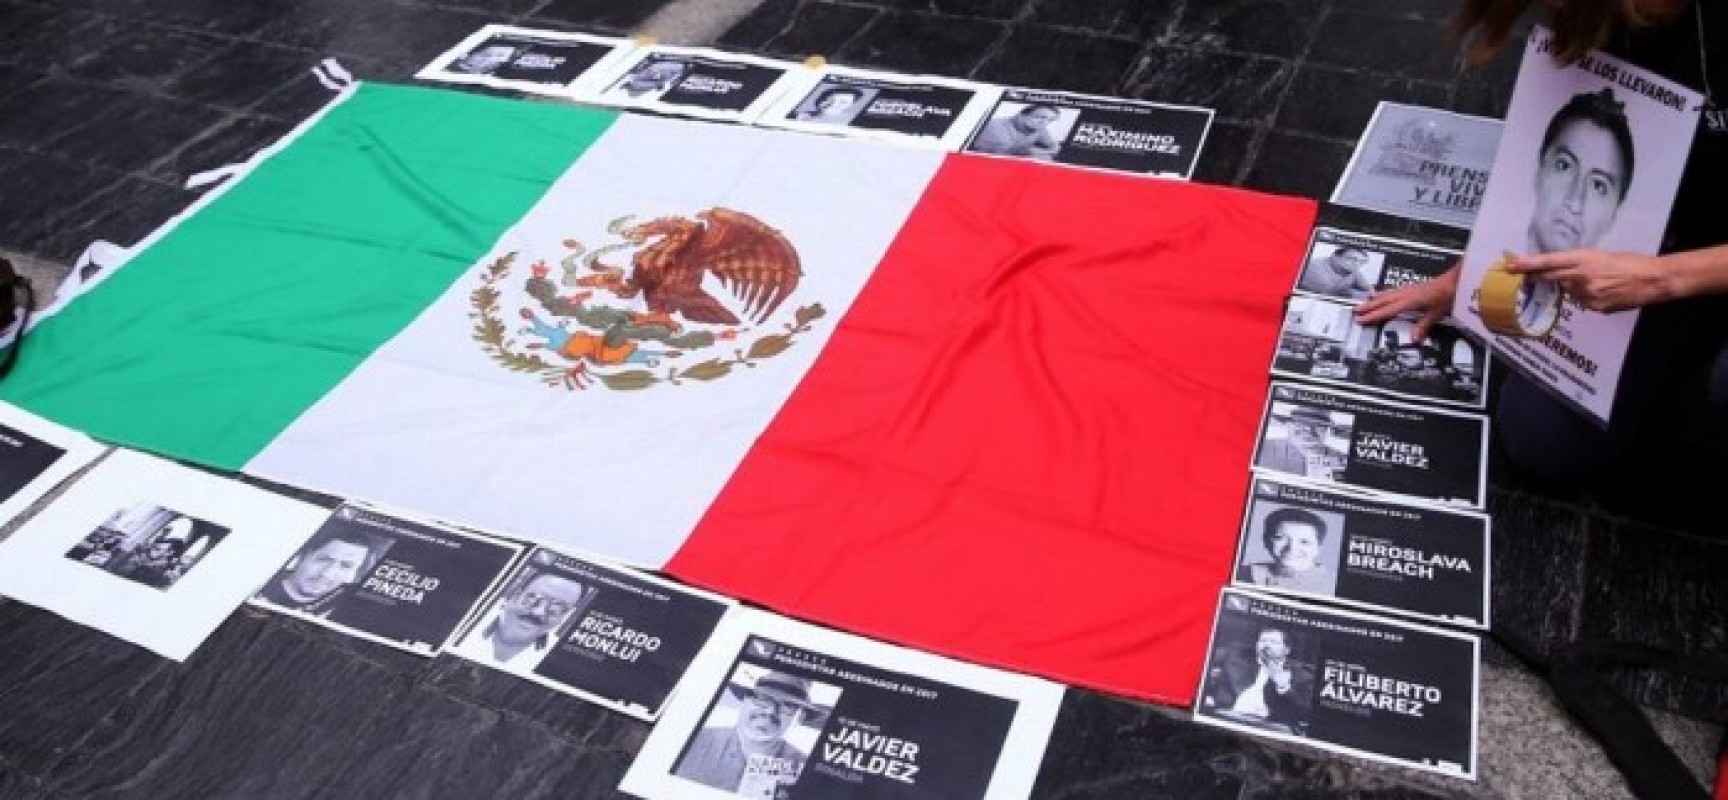 México é o país com mais mortes de jornalistas em 2017, alerta organização